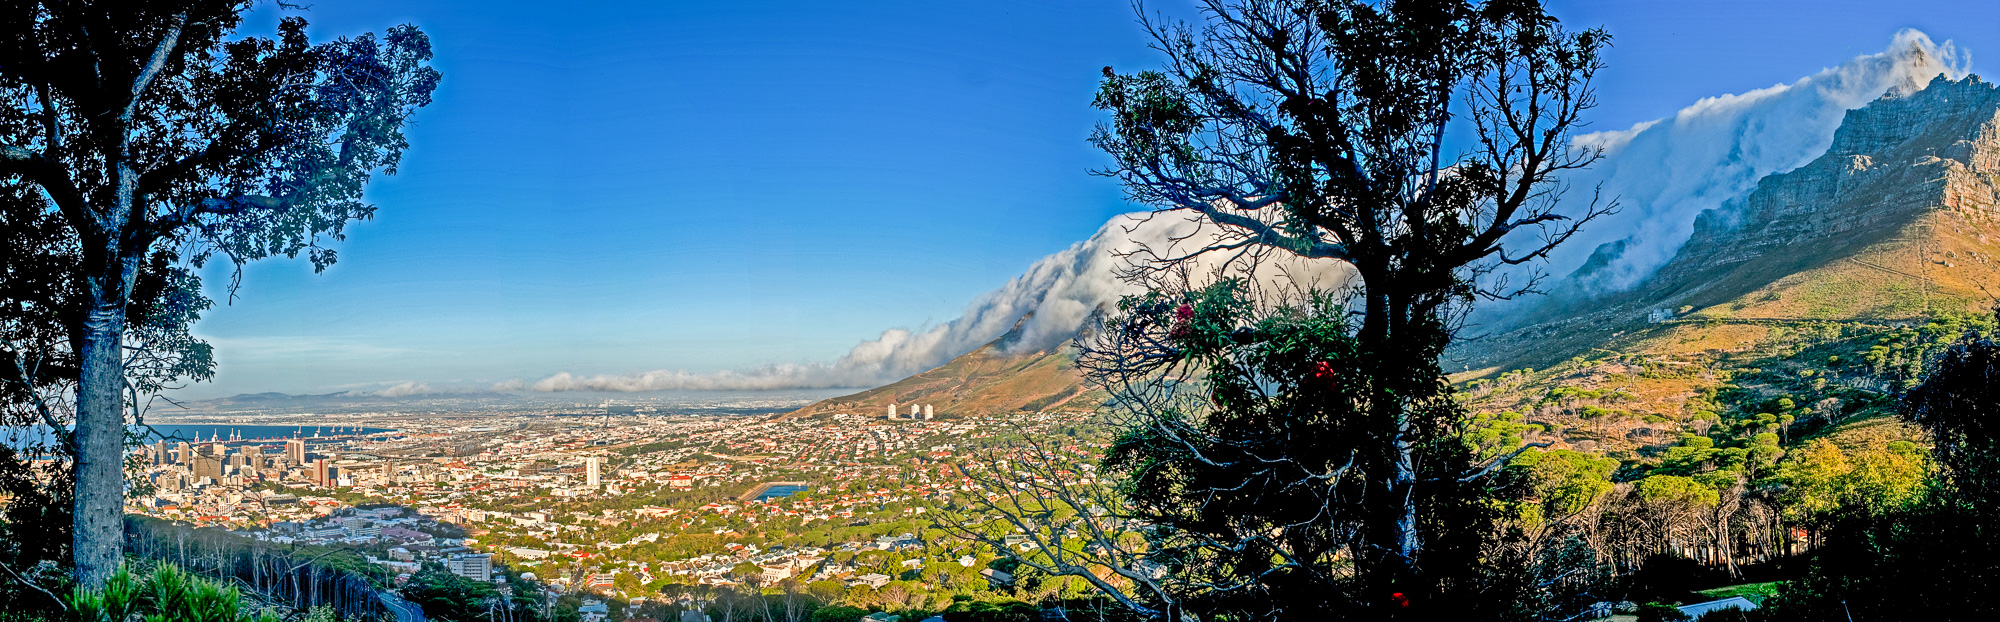 Capetown. Table Mountain recouverte d'un voile de nuage fréquent, appelé "Tablecloth" et la tête de Lion.